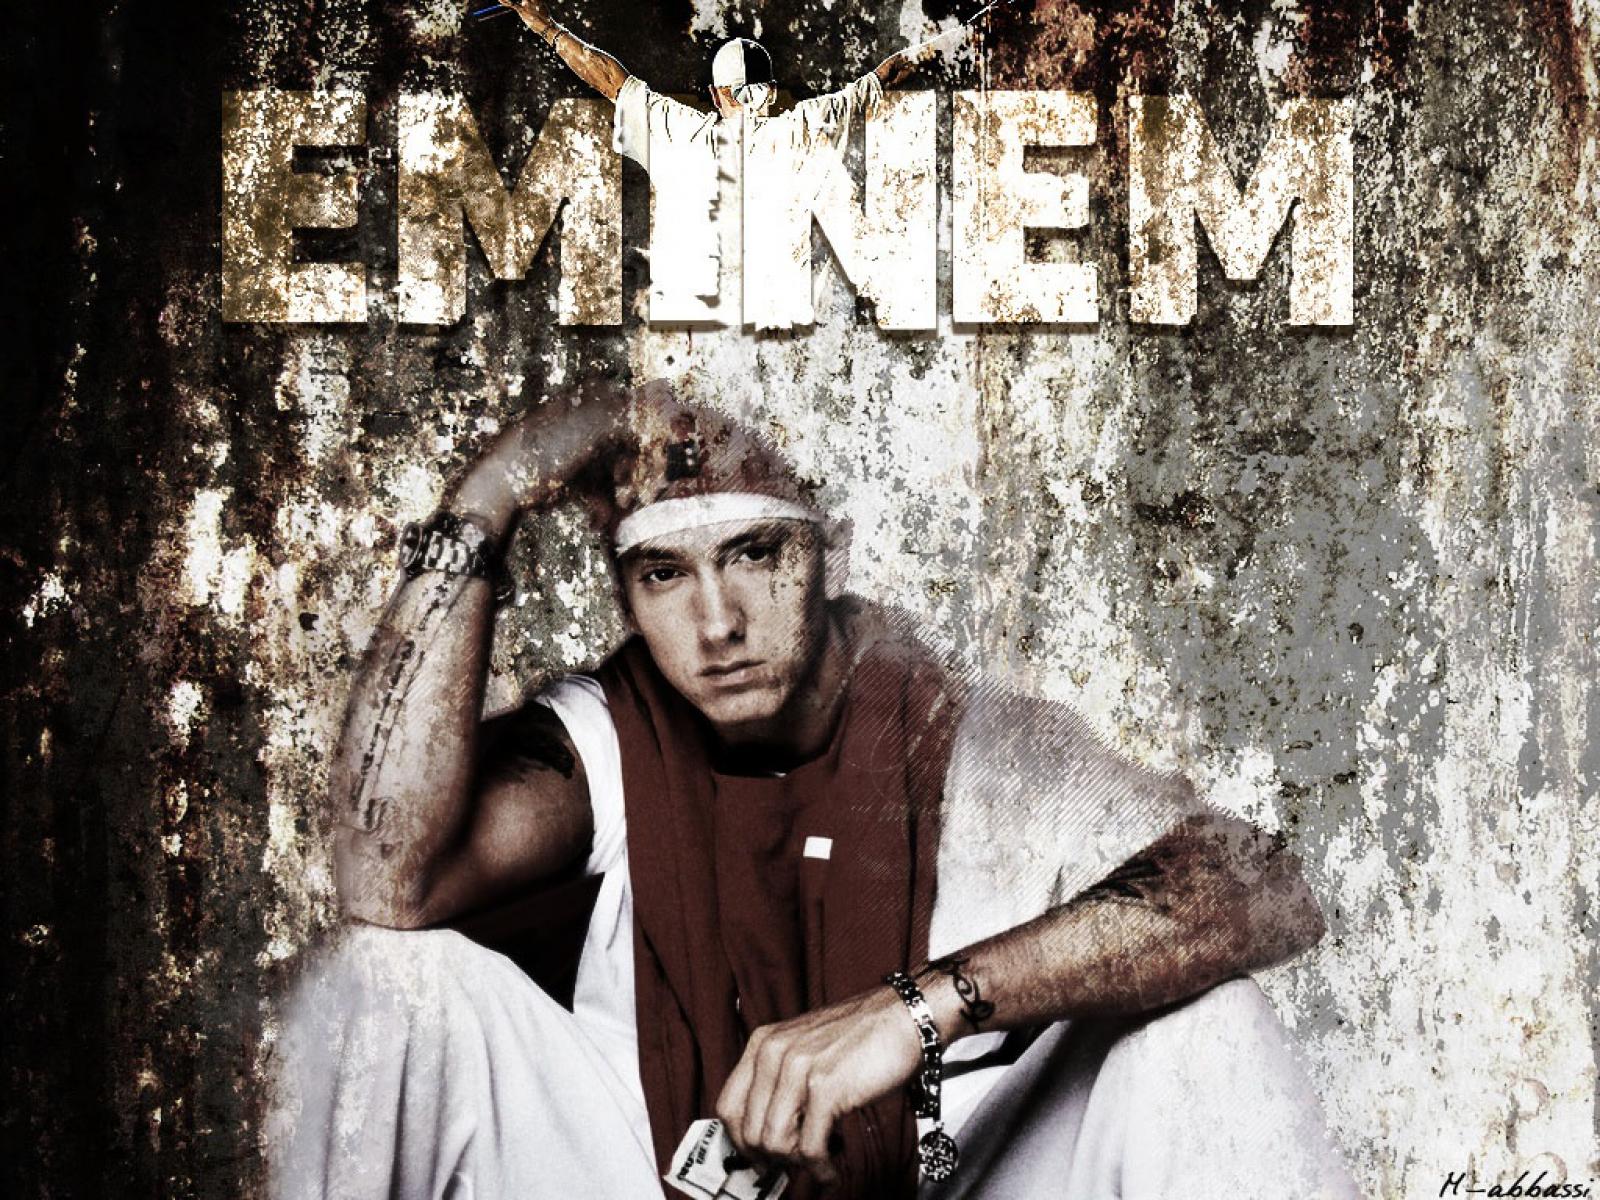 Eminem Wallpaper Pictures